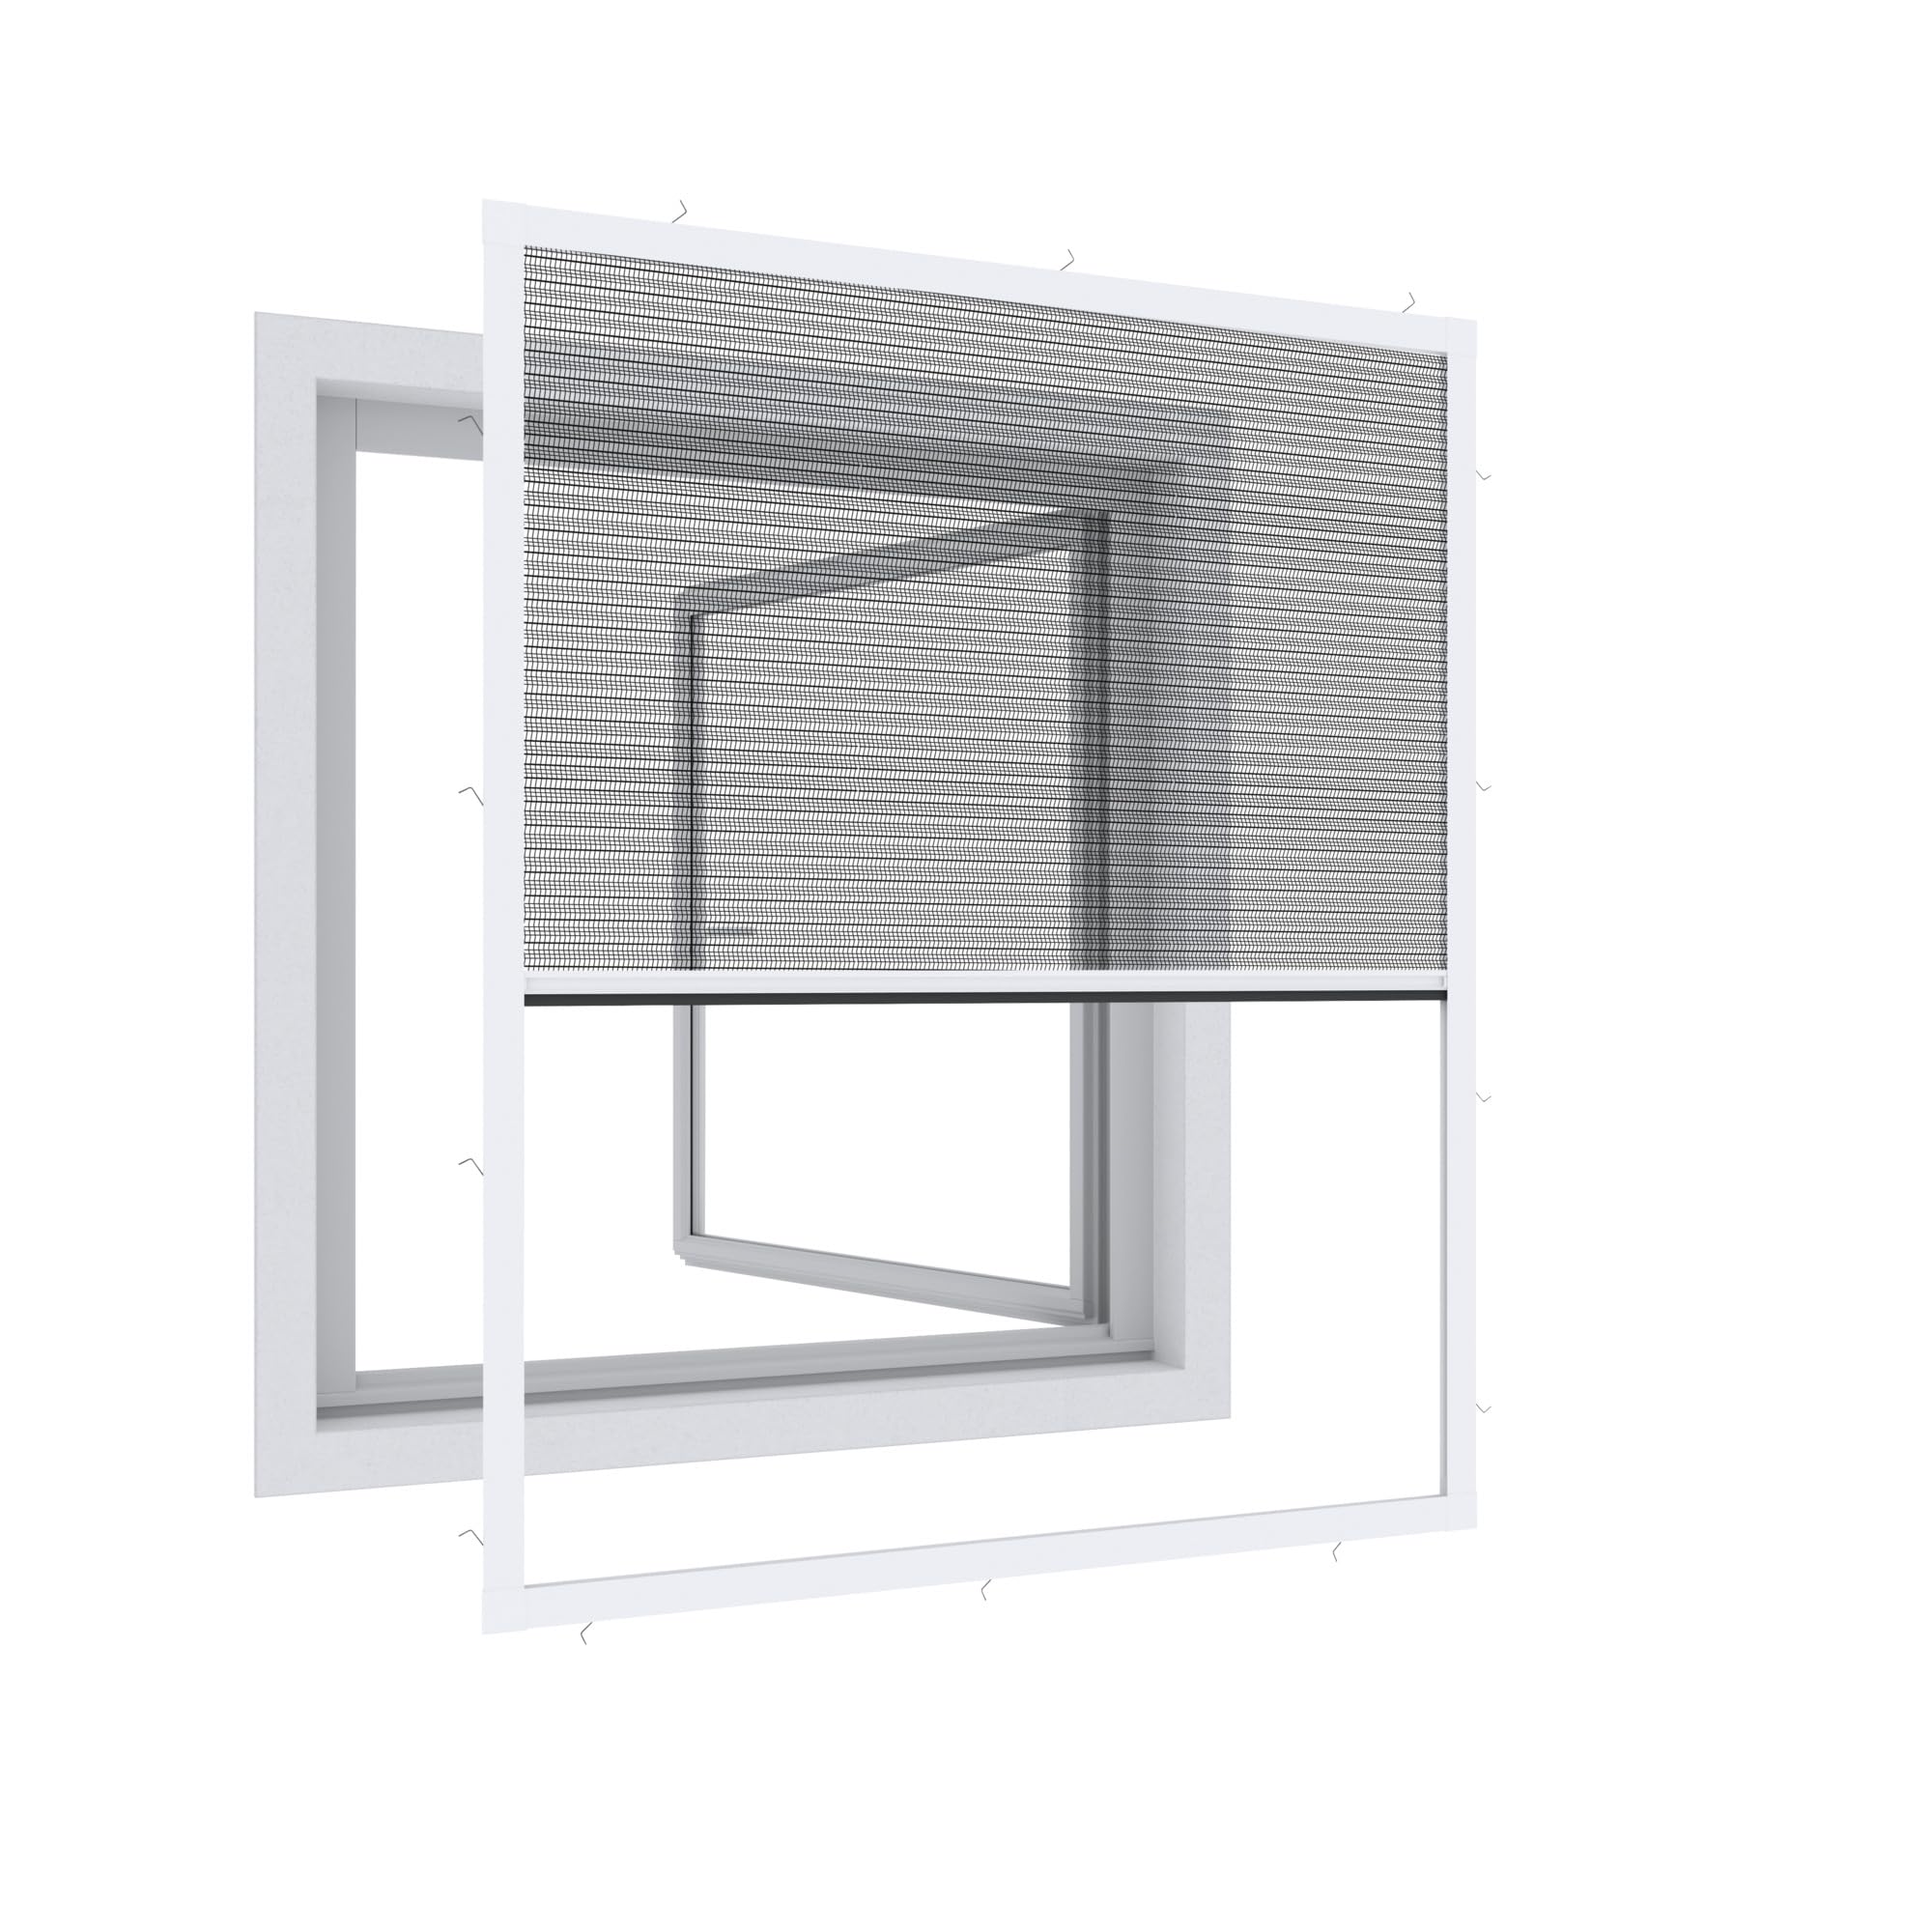 Windhager Expert Plissee Fenster Ultra Flat, Insektenschutz für Fenster, Fliegengitter, Mosquitoschutz, Selbstbausatz 100 x 120 cm, weiß, 03242